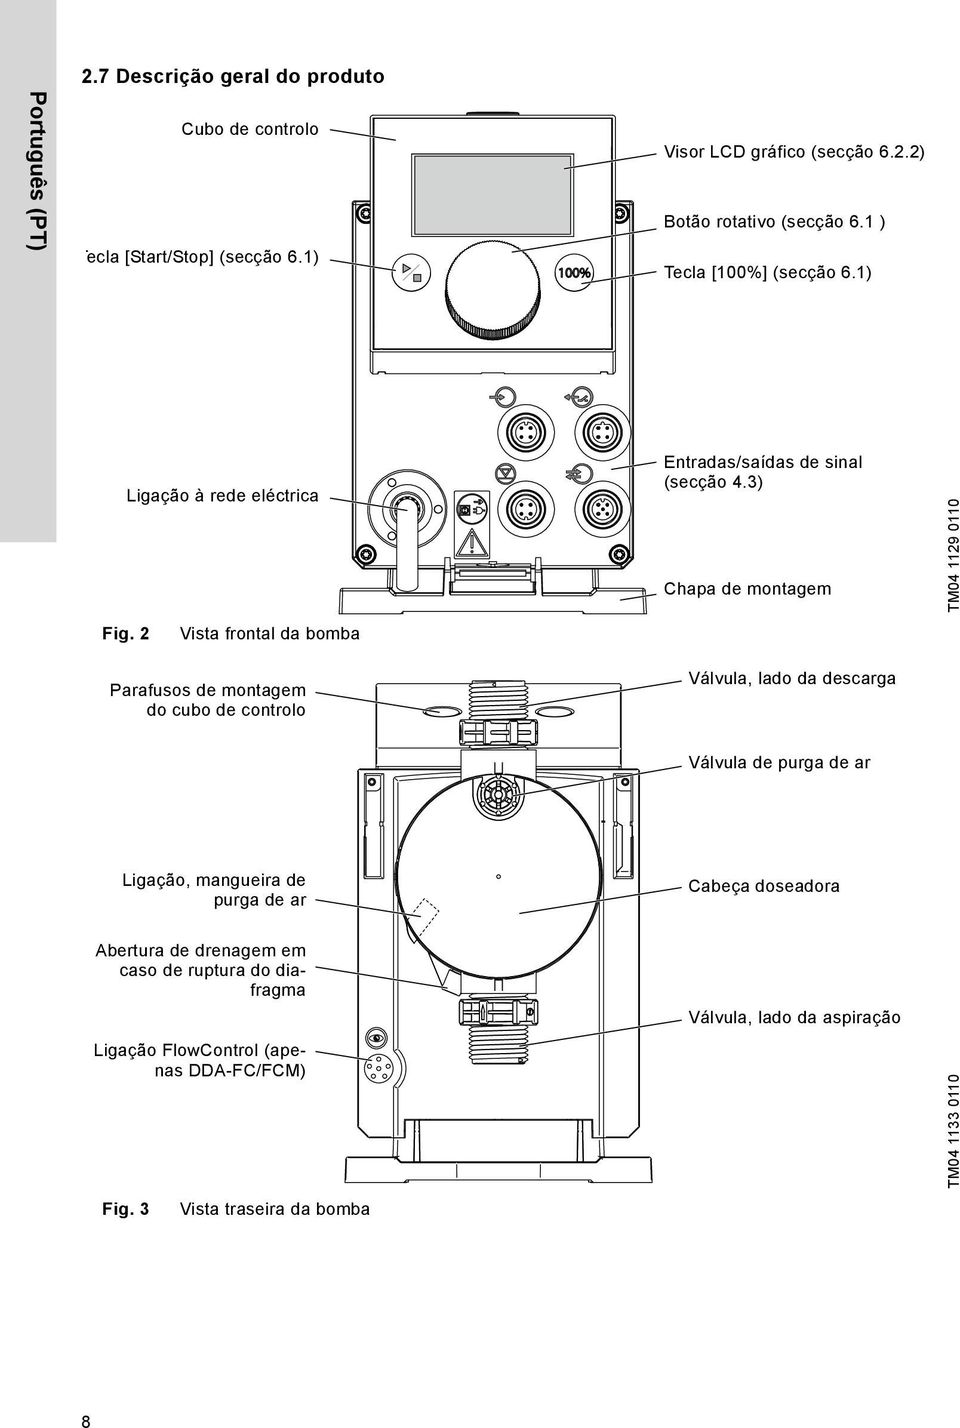 2 Vista frontal da bomba Parafusos de montagem do cubo de controlo Válvula, lado da descarga Válvula de purga de ar Ligação, mangueira de purga de ar